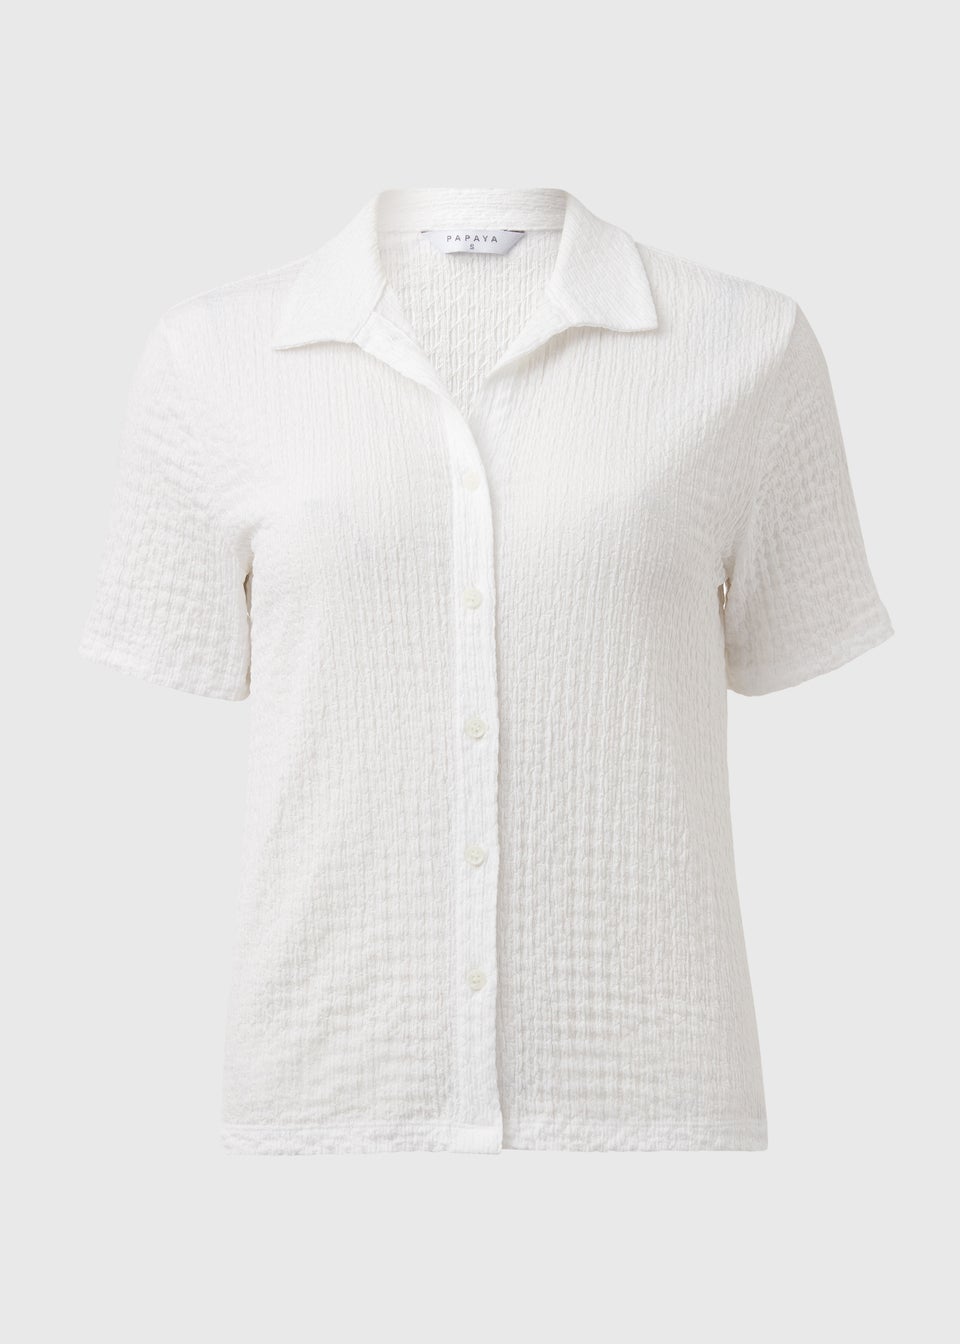 WhiteTextured Short Sleeve Jersey Shirt